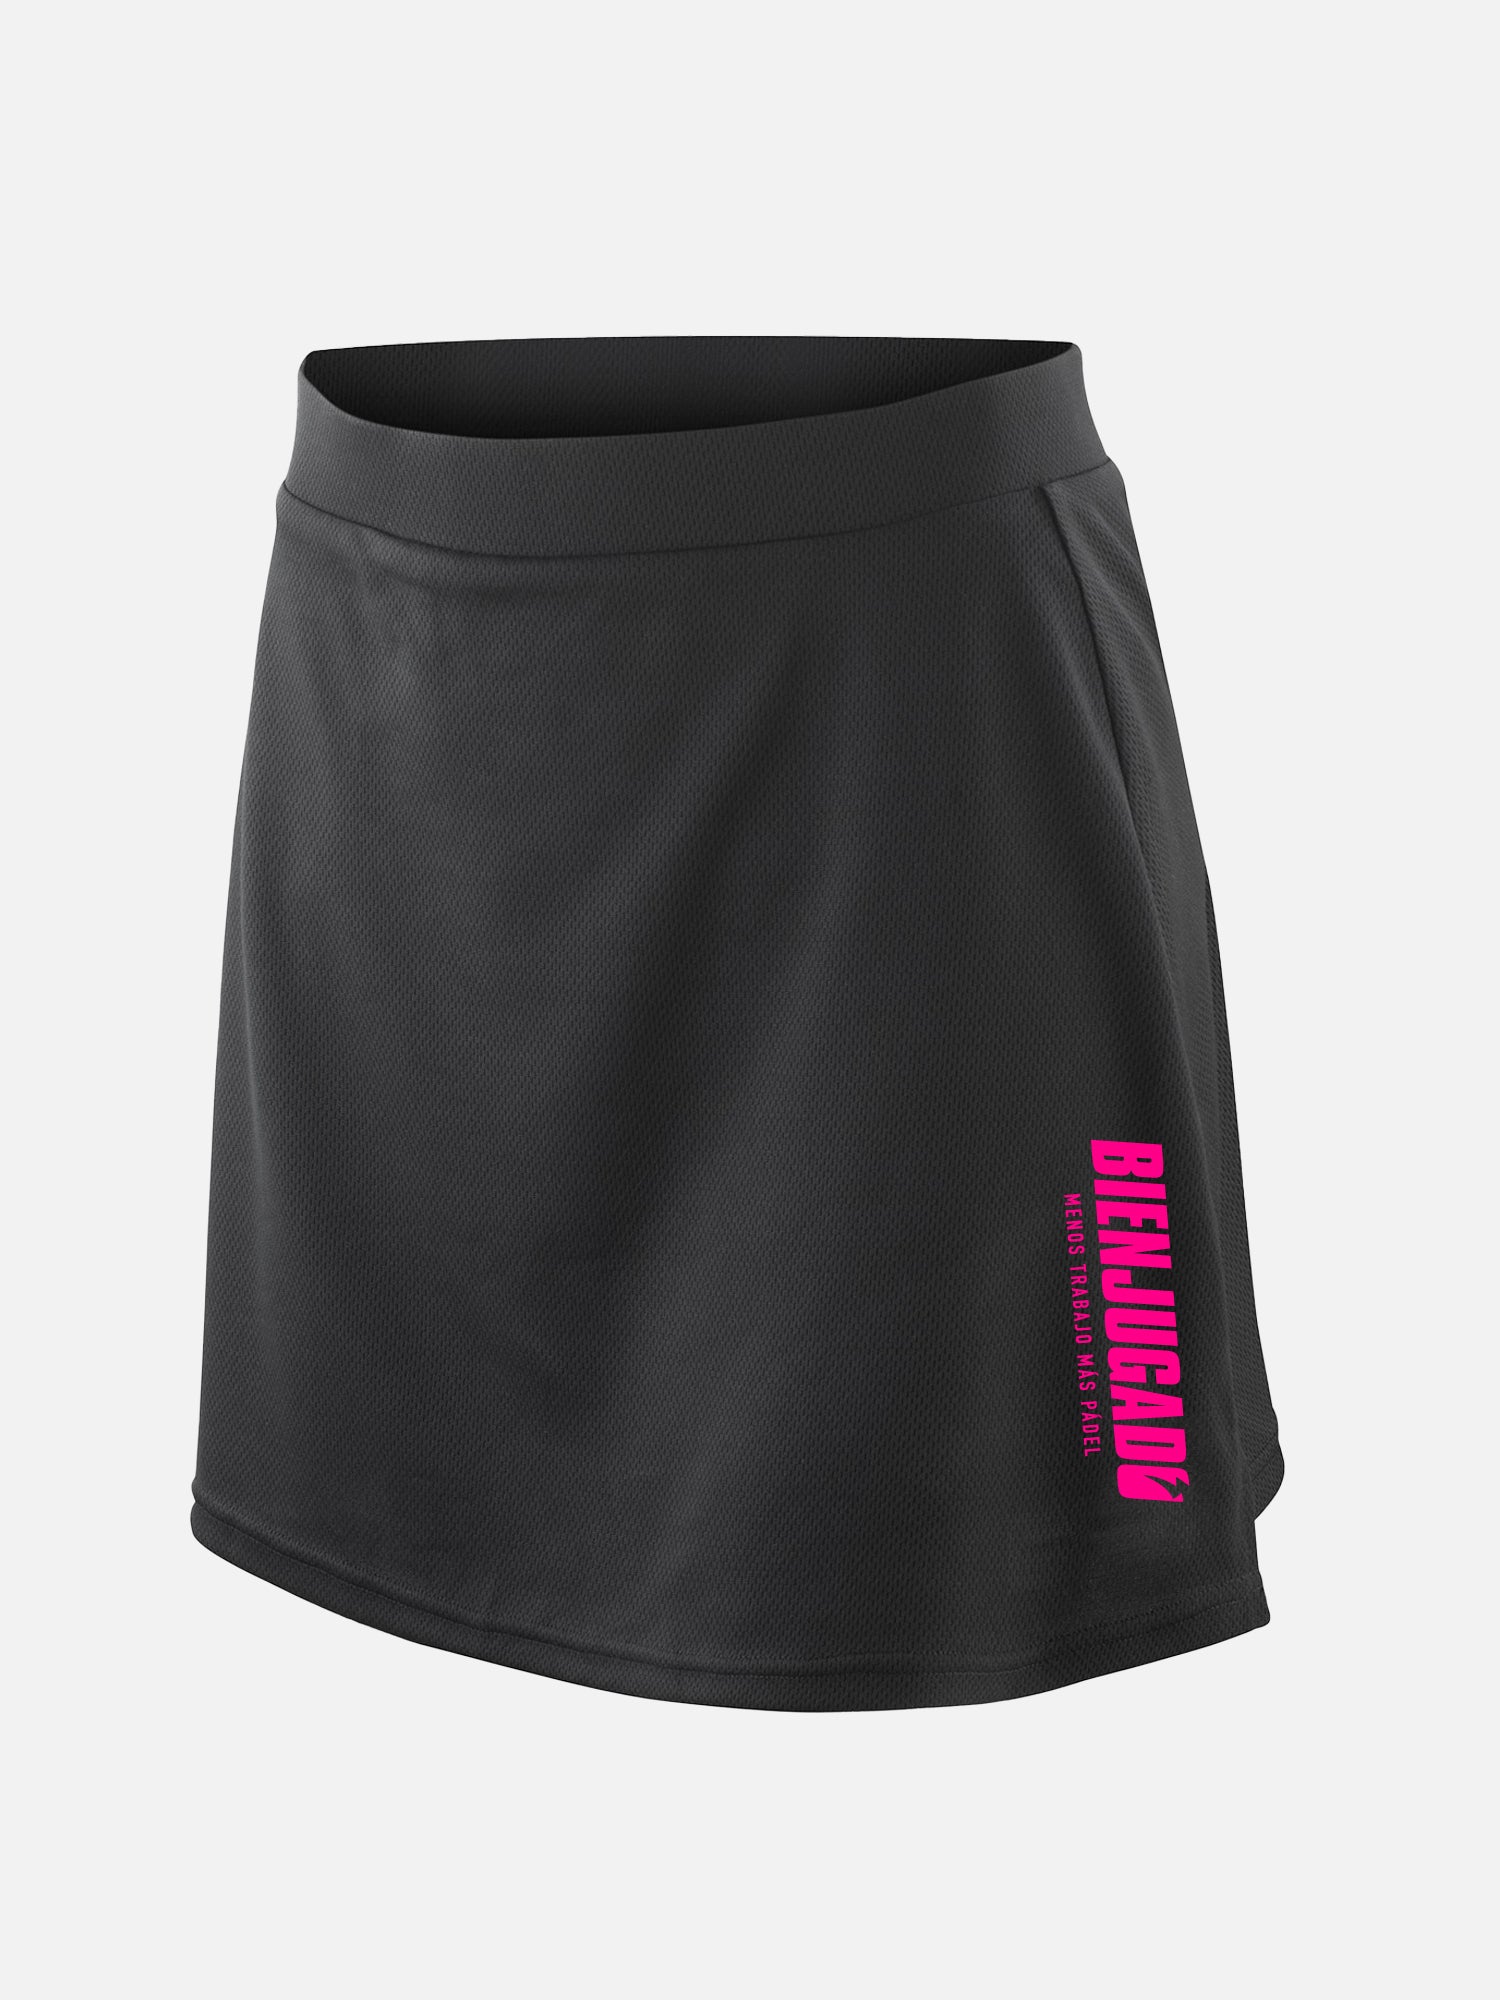 Dry Fit Skirt - Black